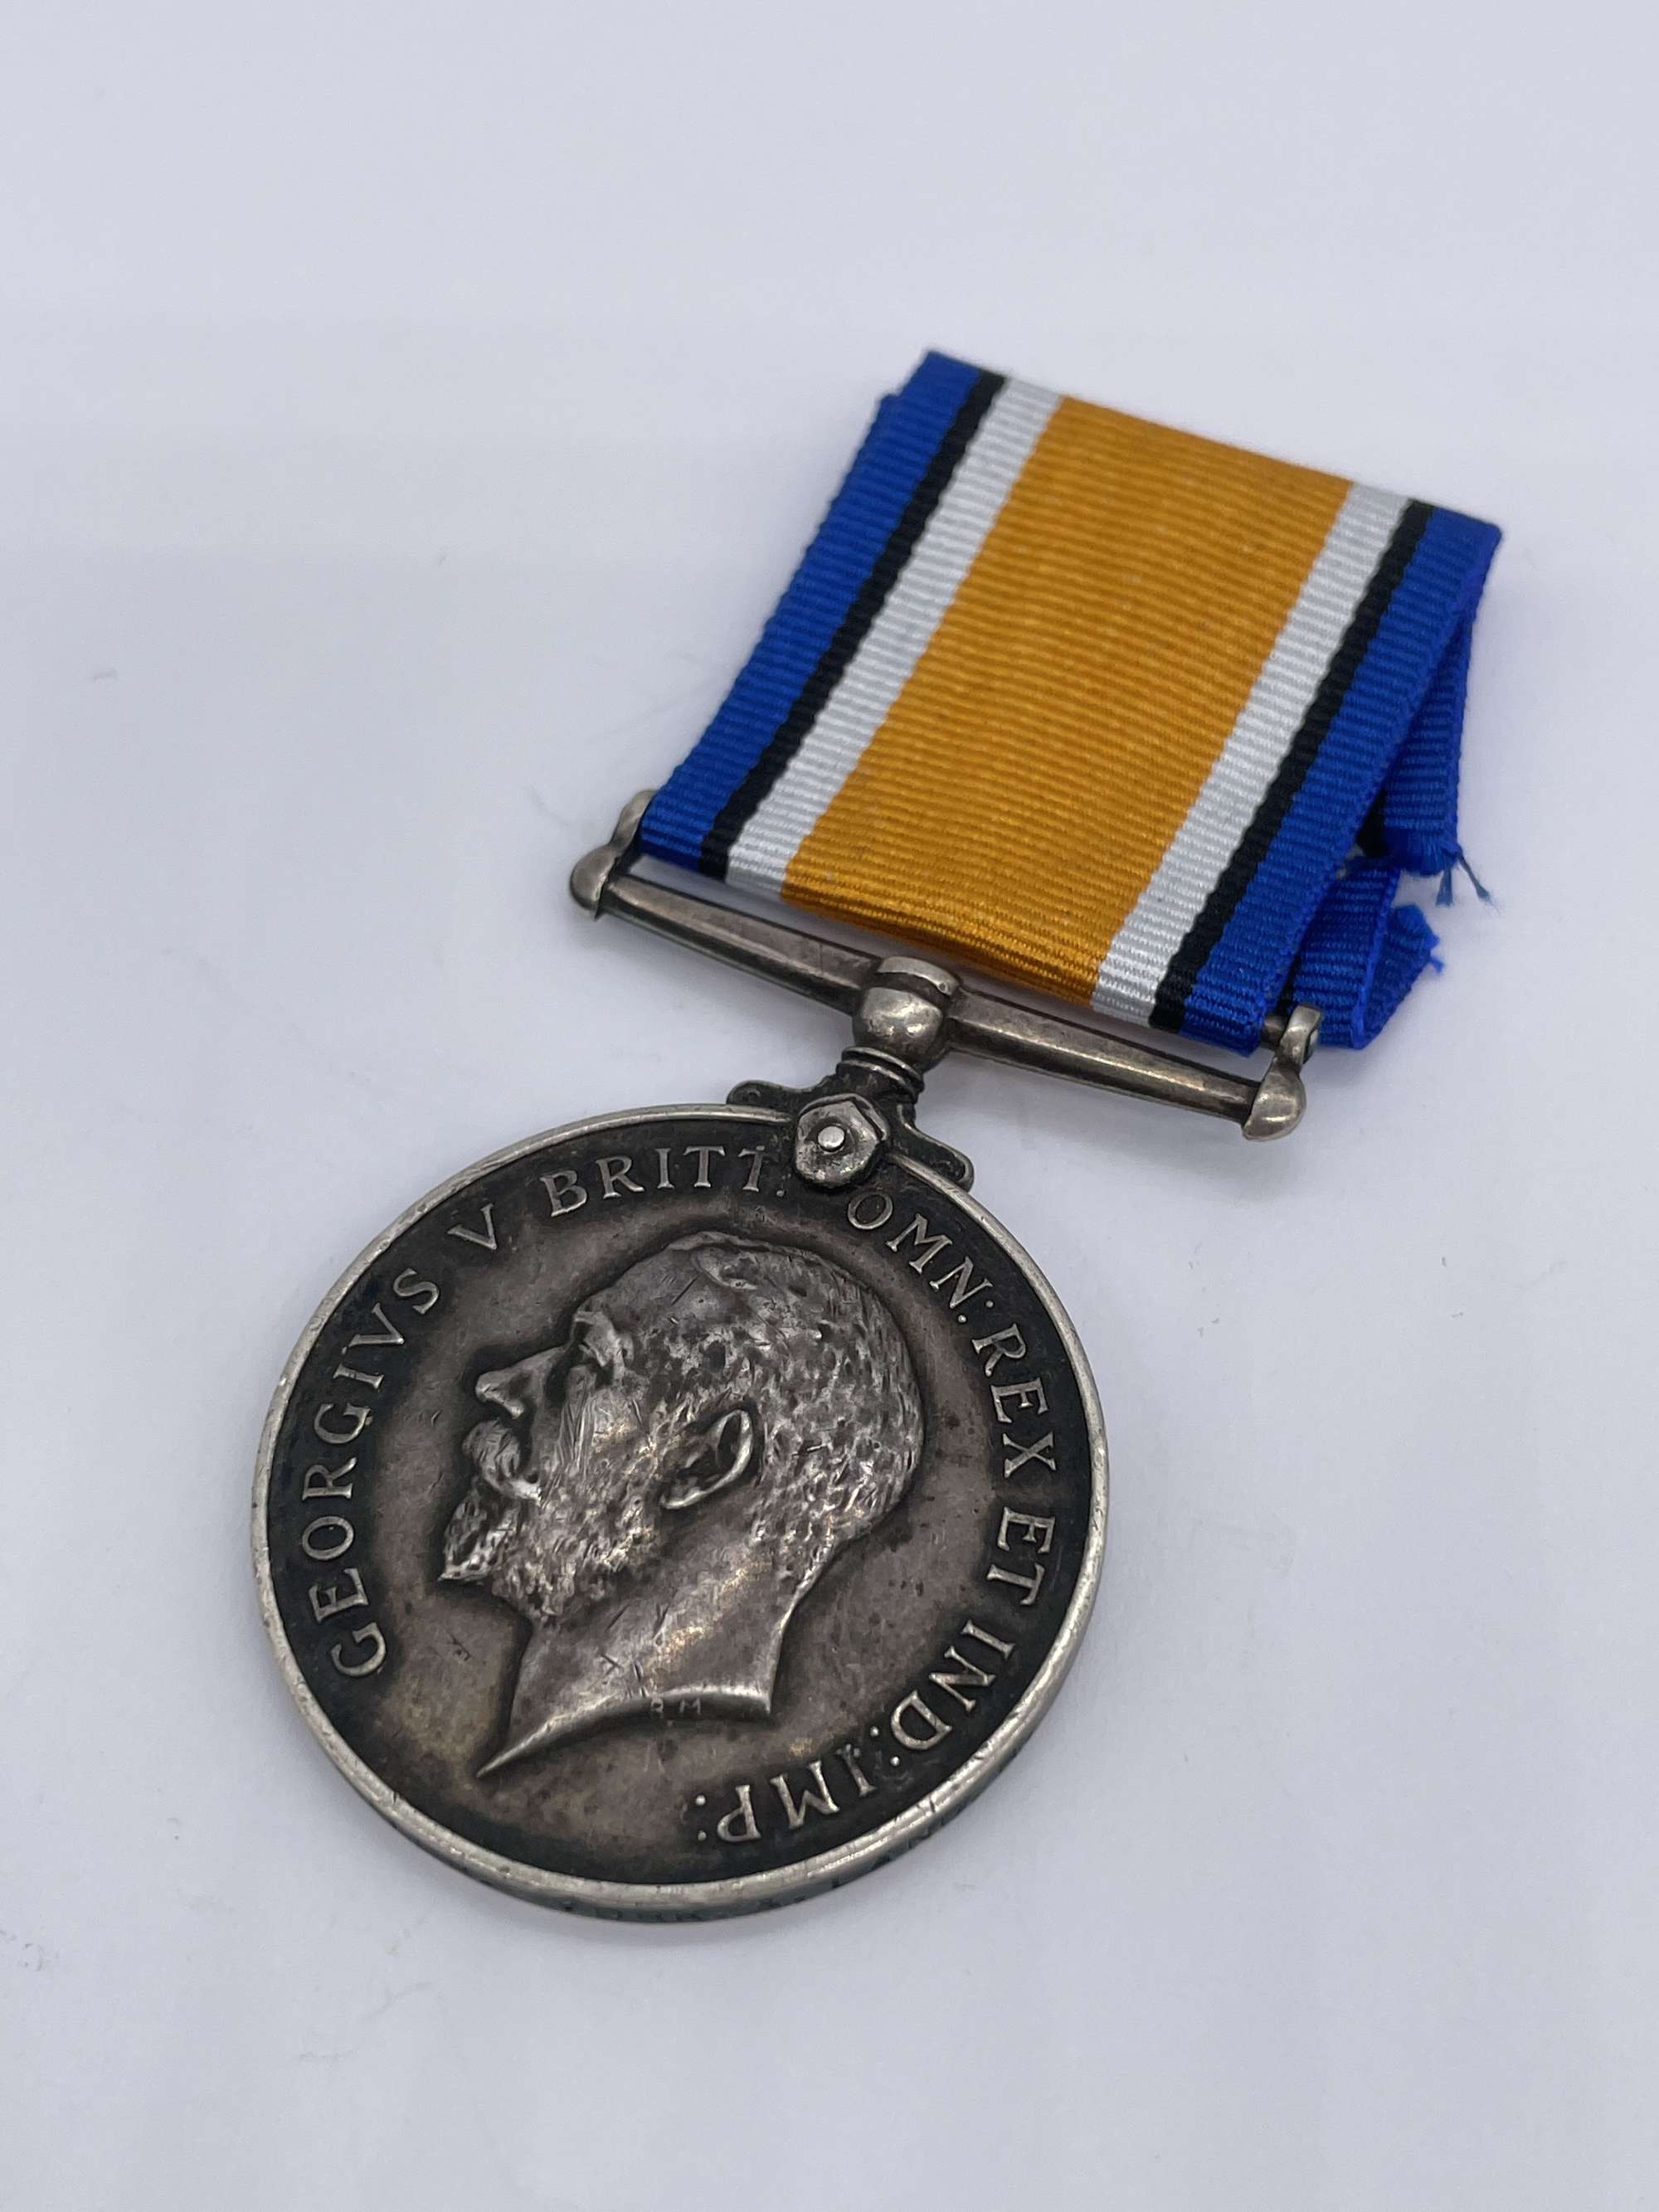 Original World War One British War Medal, Pte Carter/Faulkner, Yorks and Lancs, Died